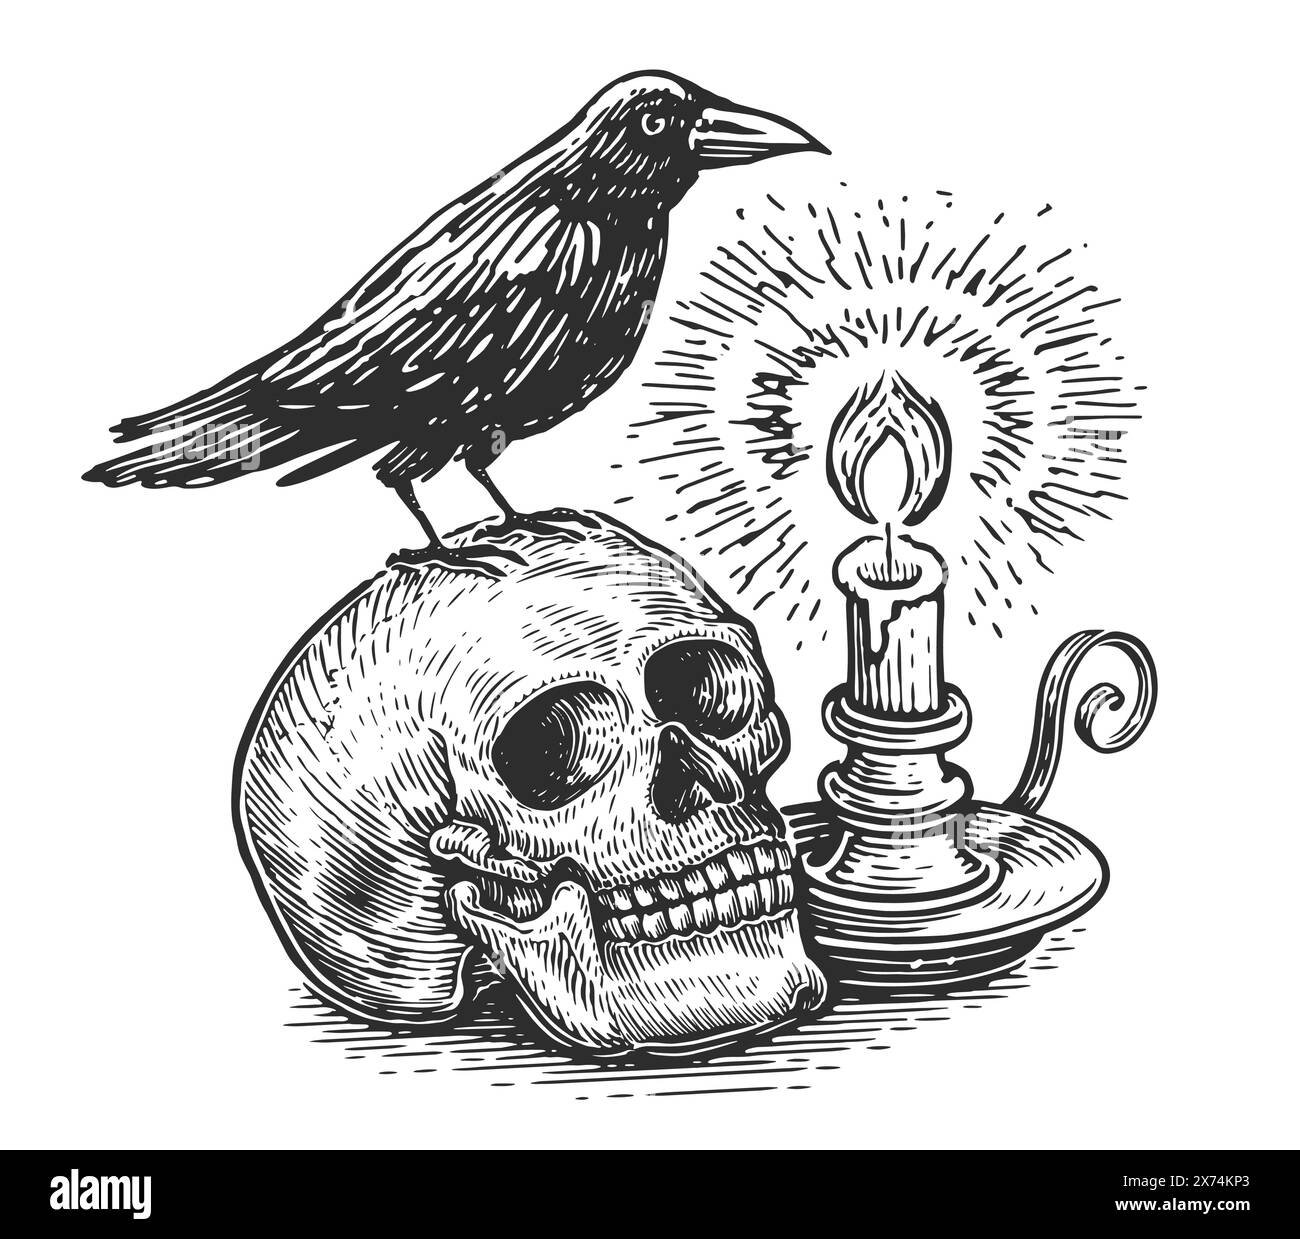 Teschio umano con corvo sulla testa, candela bruciata nel candelabro. Disegno vettoriale di schizzo disegnato a mano Clipart Illustrazione Vettoriale